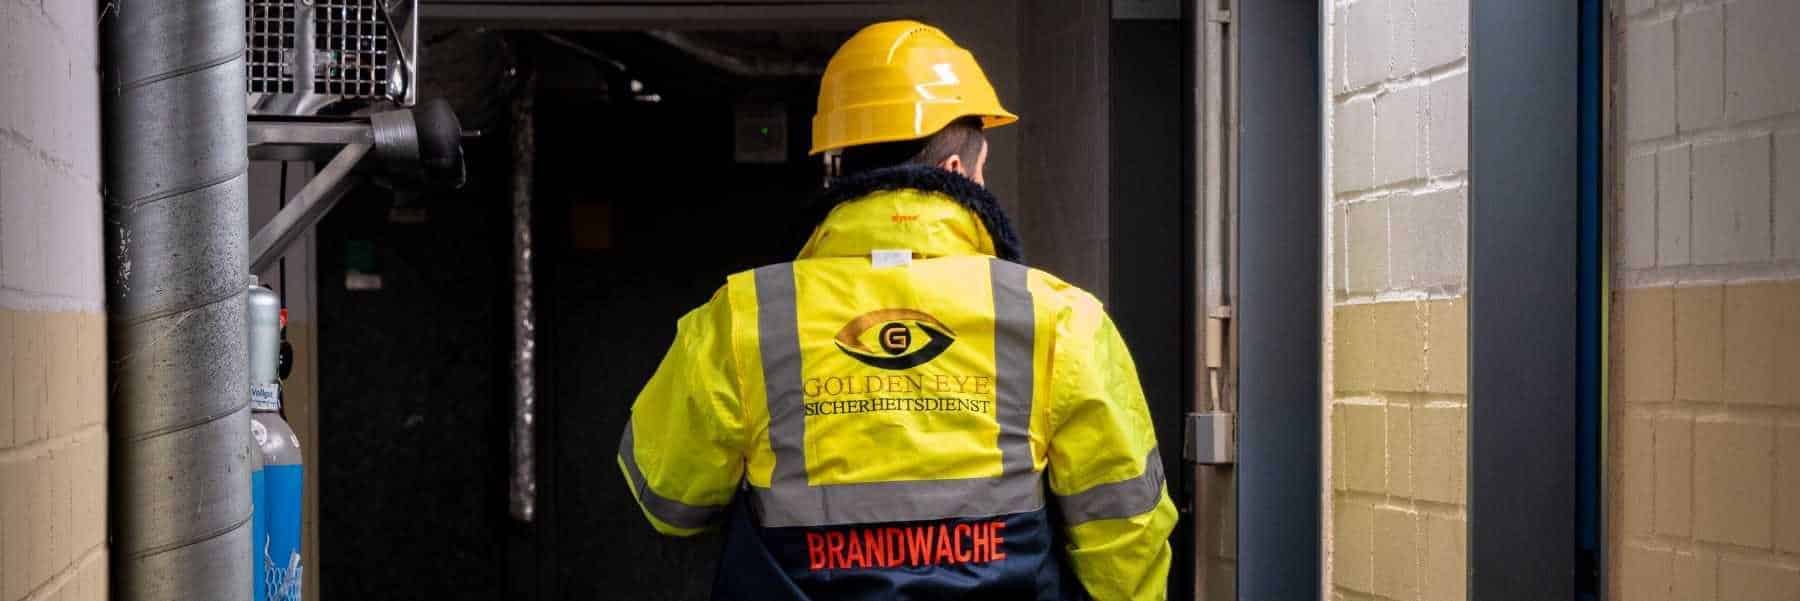 Brandschutzhelfer Ausbildung Offenbach